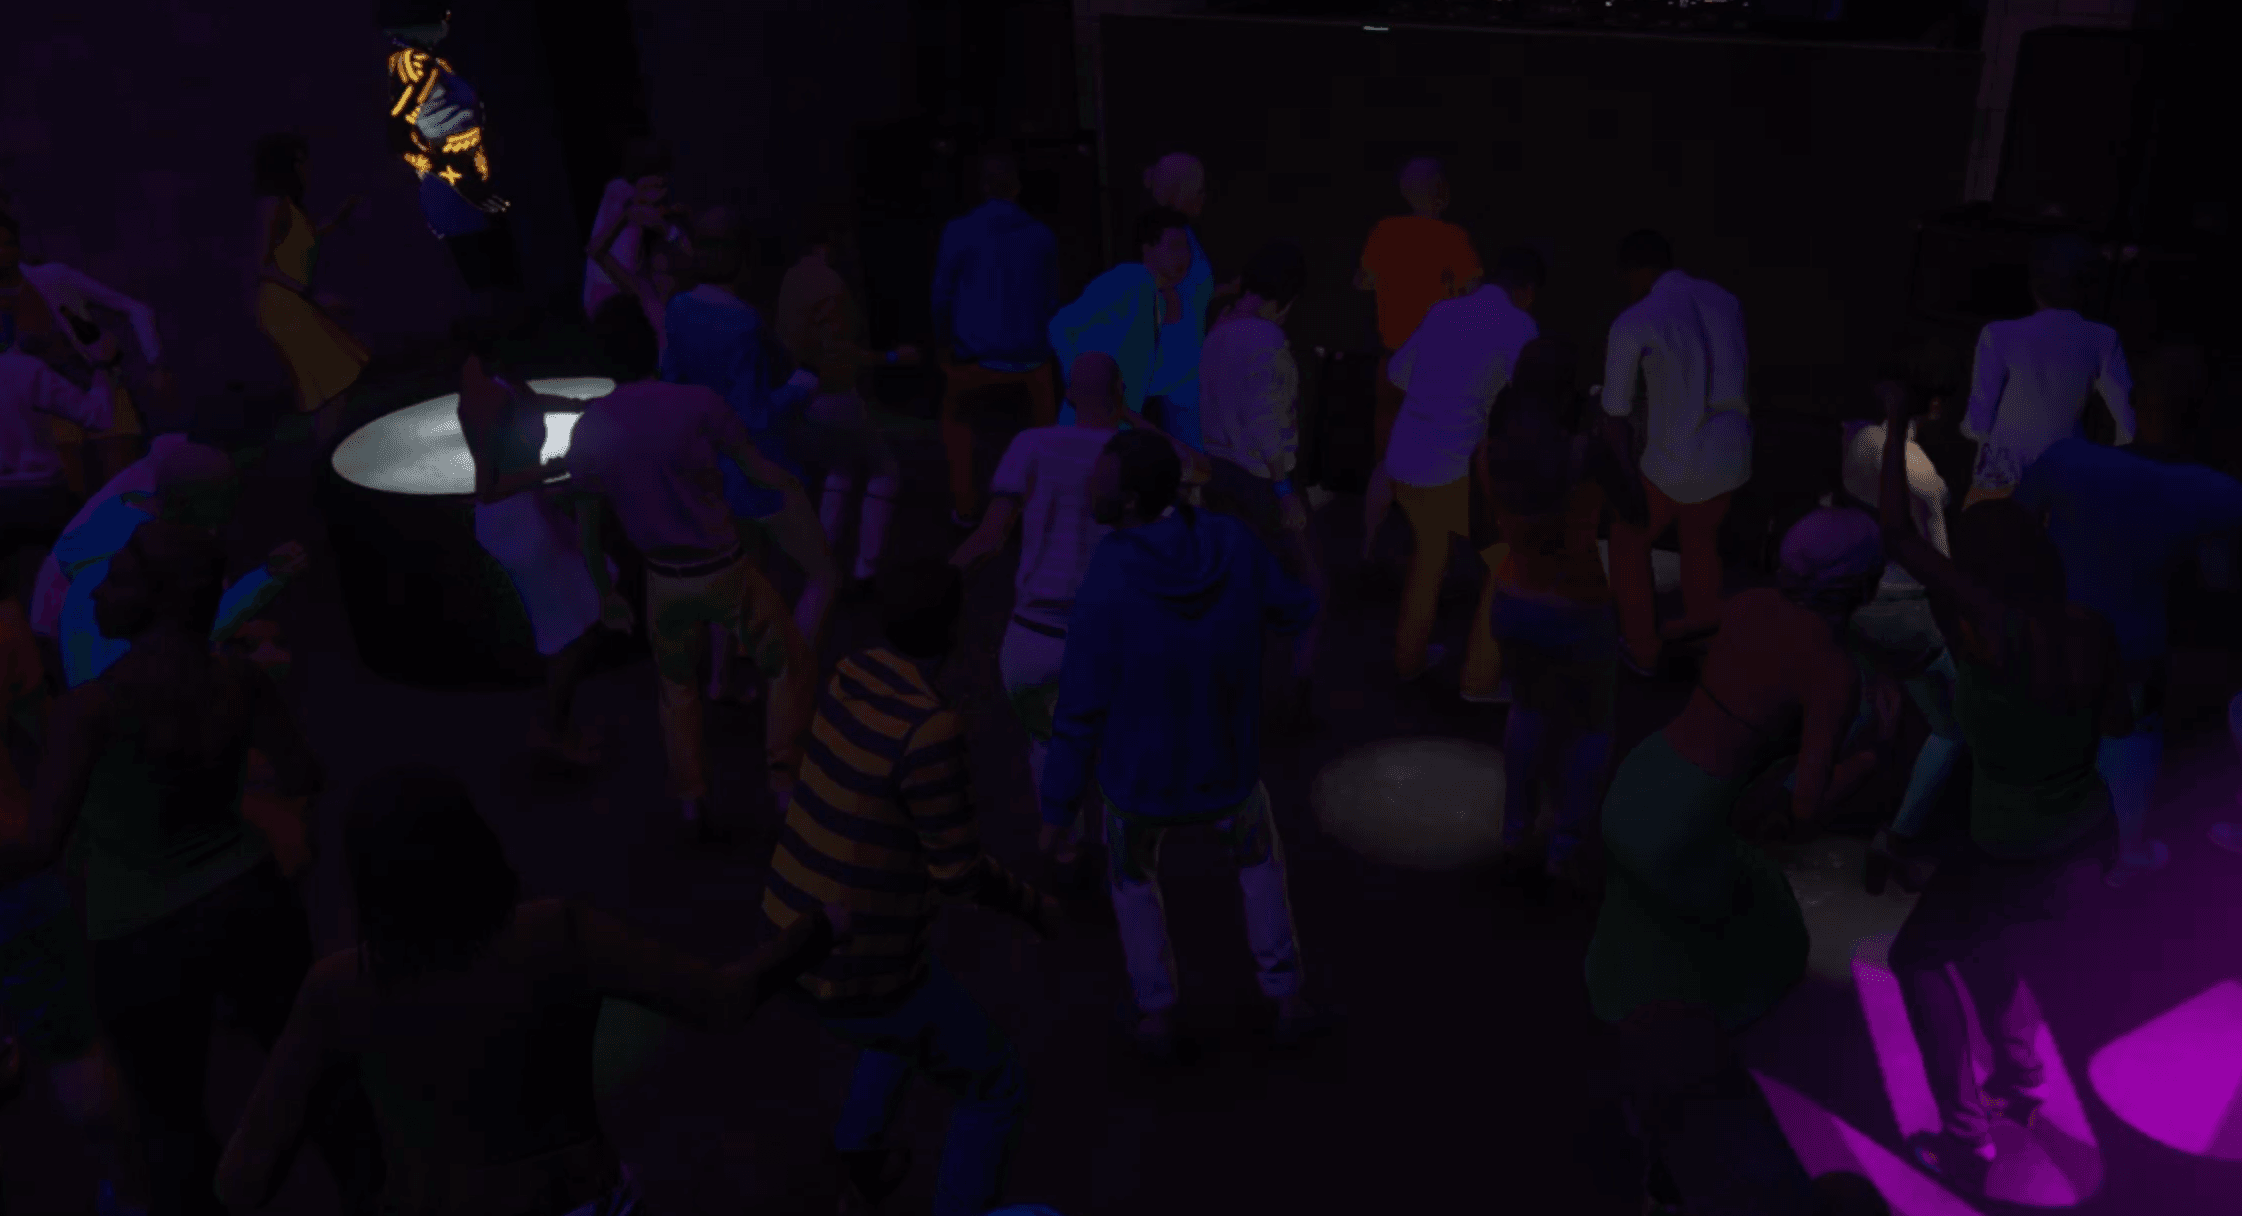 customers having fun dancing in nightclub